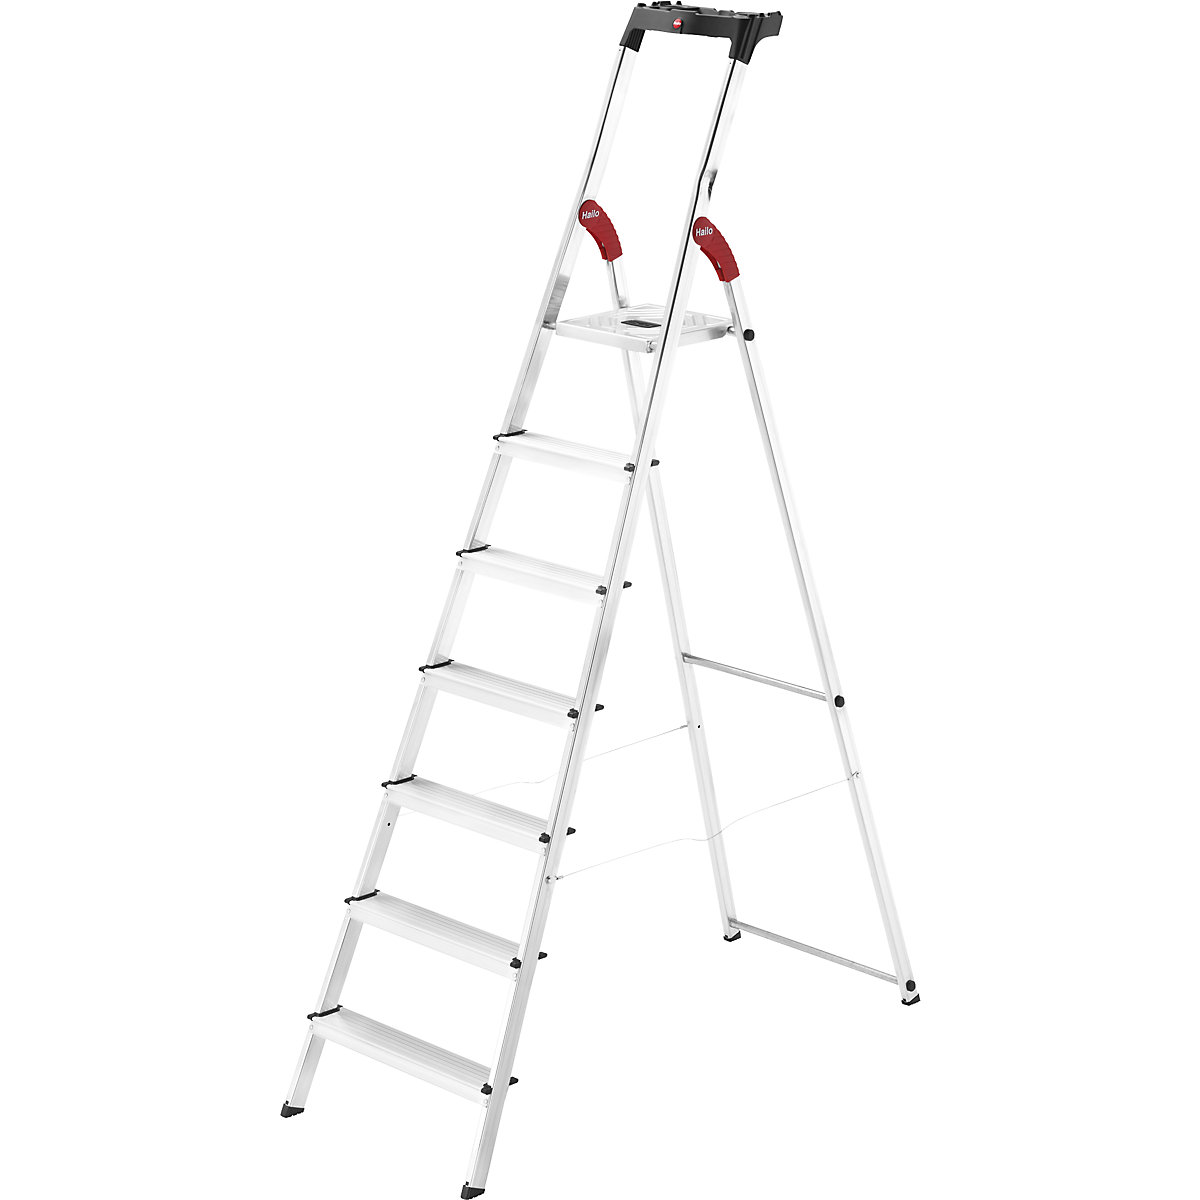 Hliníkový stojací rebrík so stupňami StandardLine L60 – Hailo, nosnosť 150 kg, 7 stupňov-12